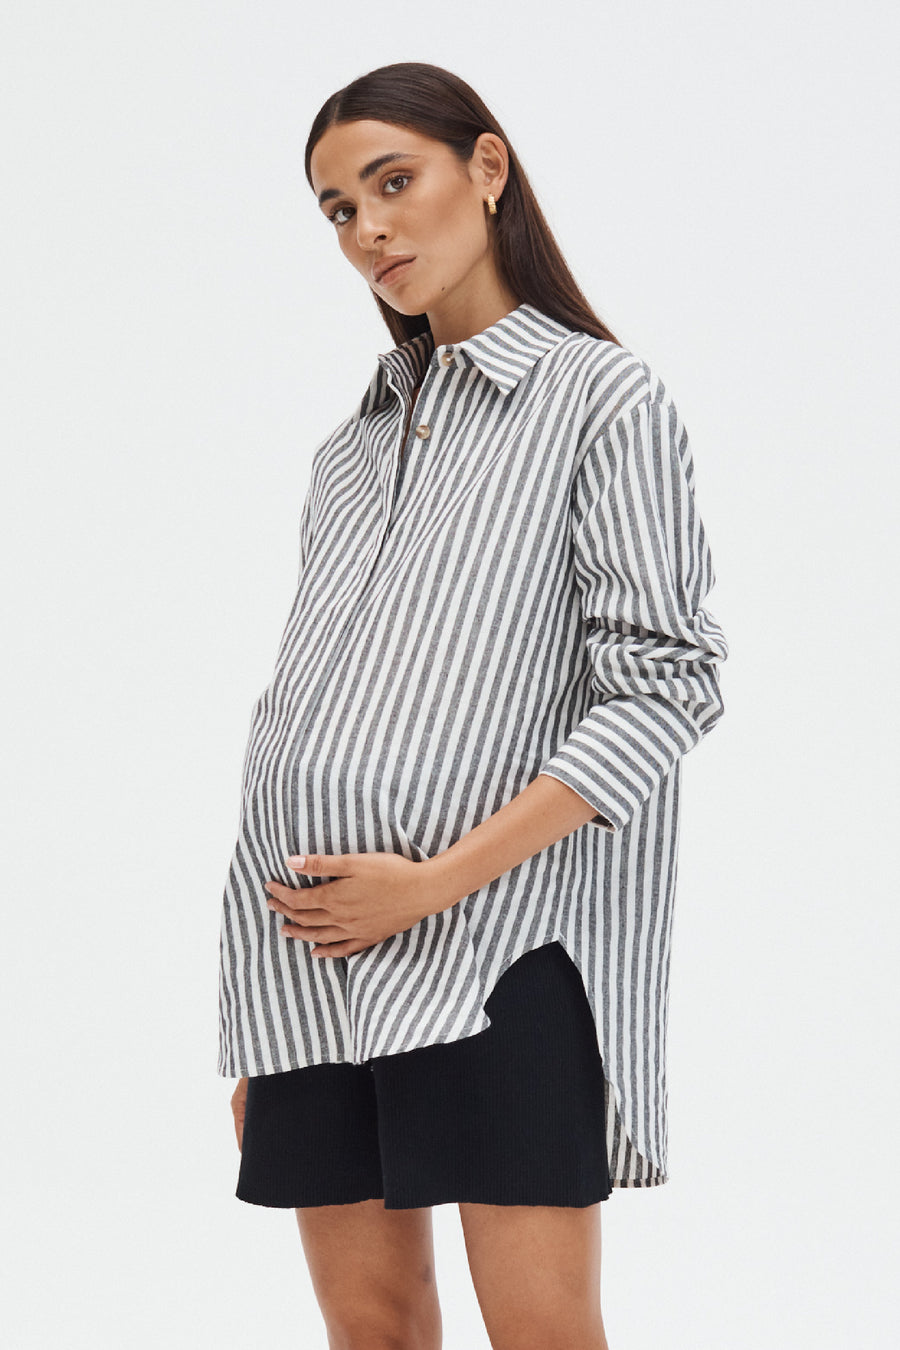 Stylish Maternity Shorts (Black) 4